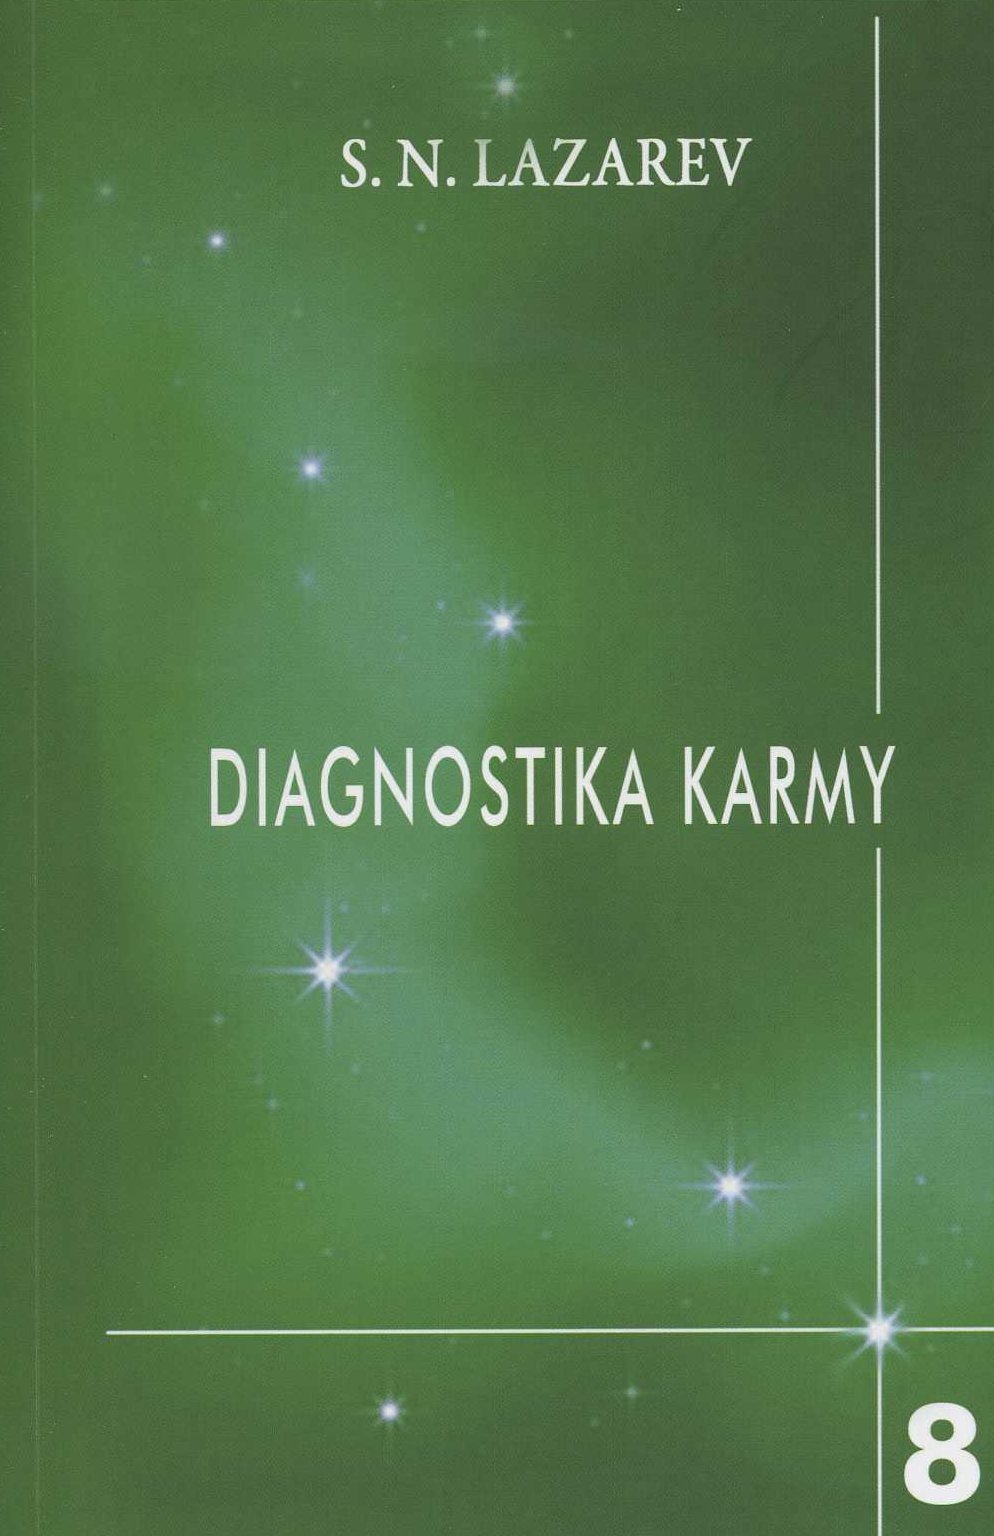 Diagnostika karmy 8 - Dialog se čtenáři